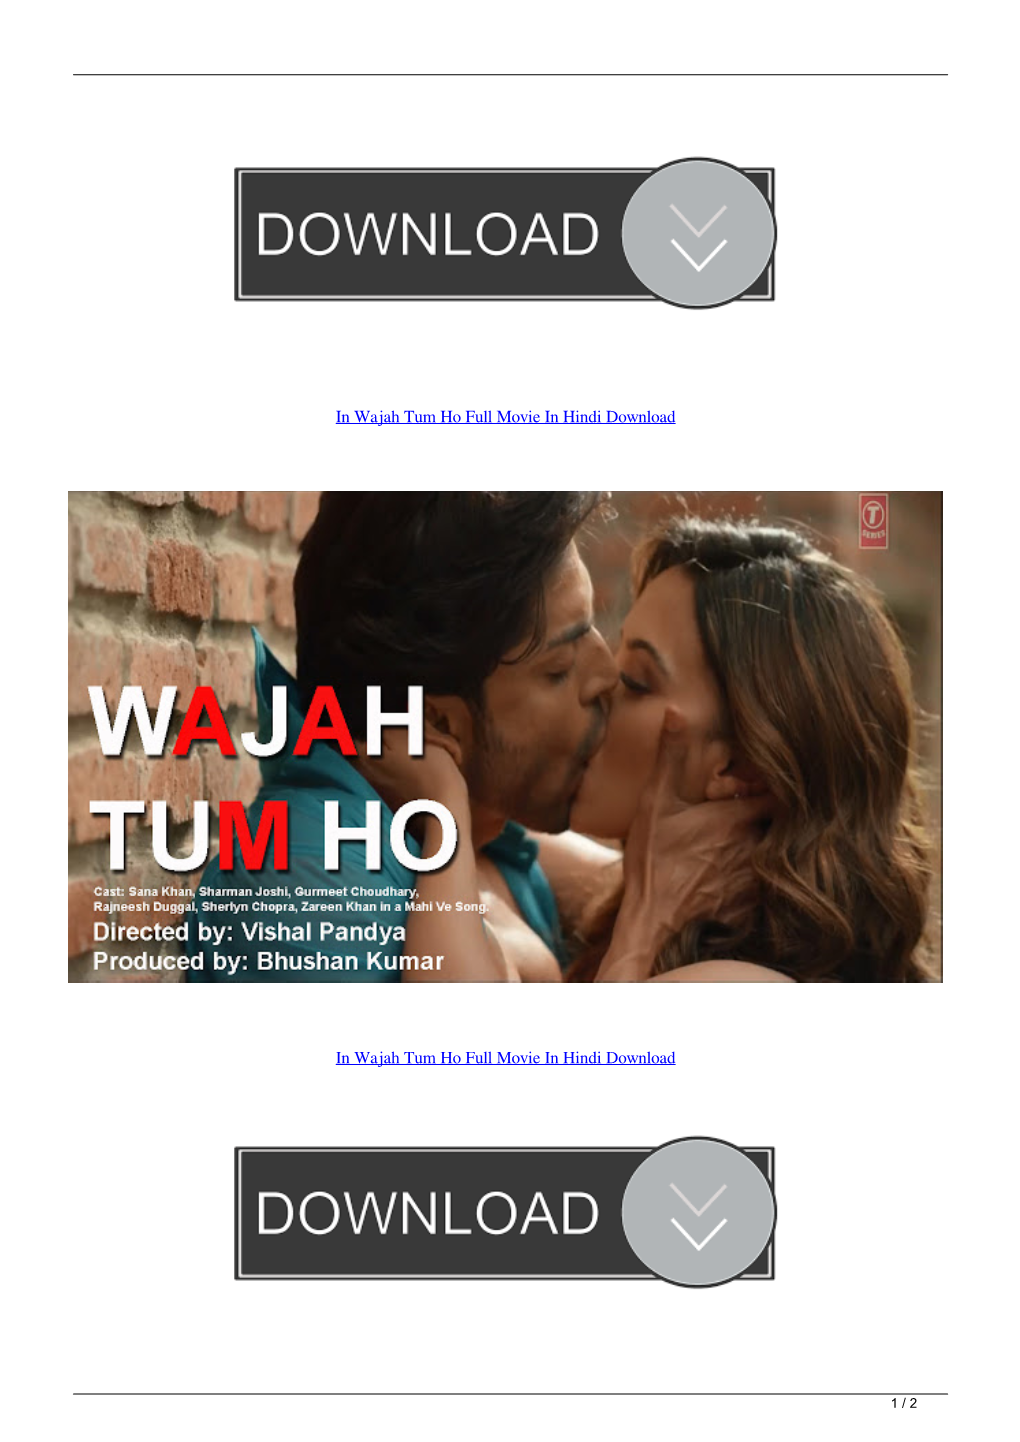 In Wajah Tum Ho Full Movie in Hindi Download